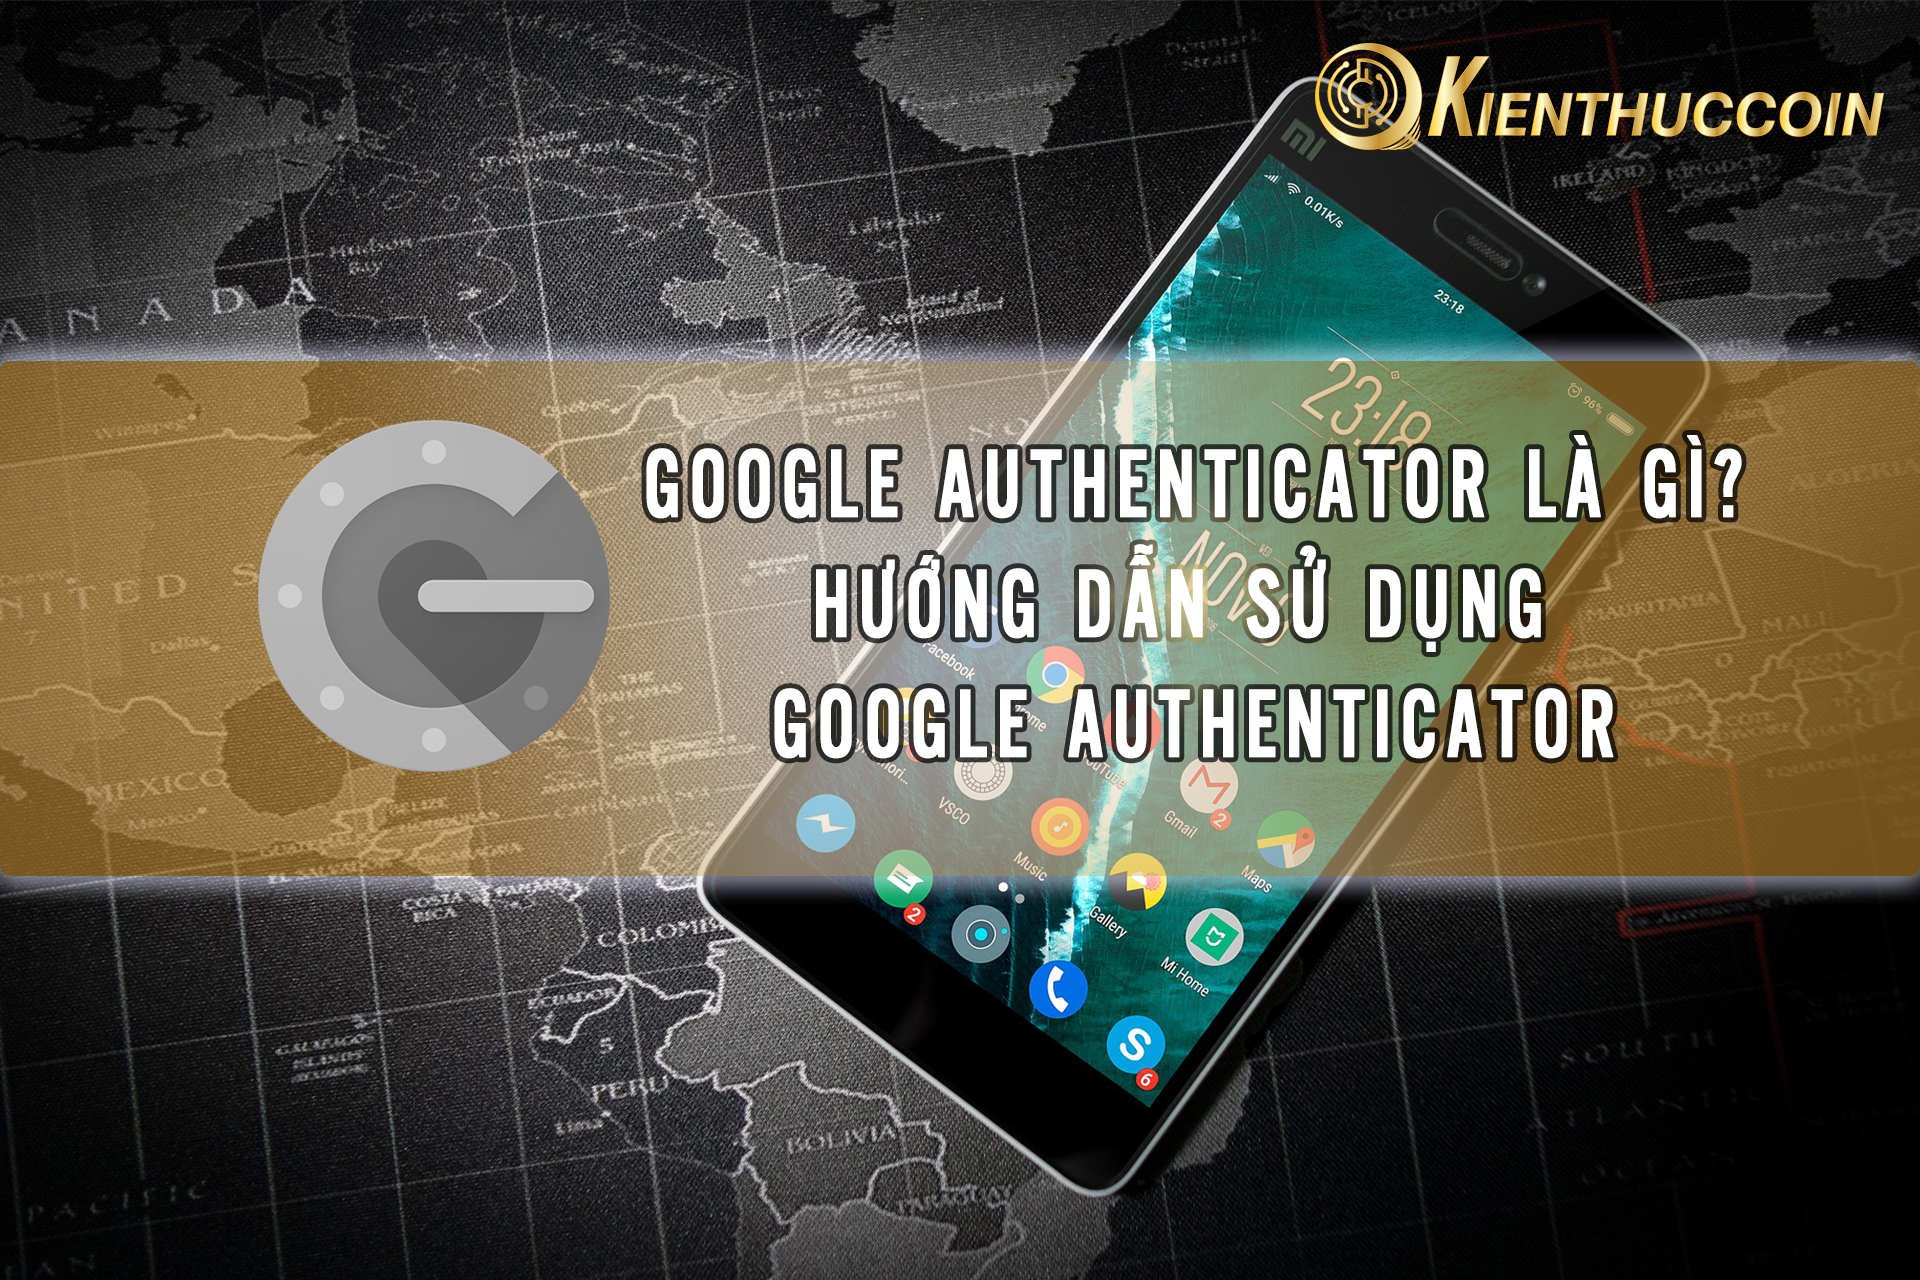 Google Authenticator là gì? Hướng dẫn Google Authenticator (2FA) từng bước chi tiết